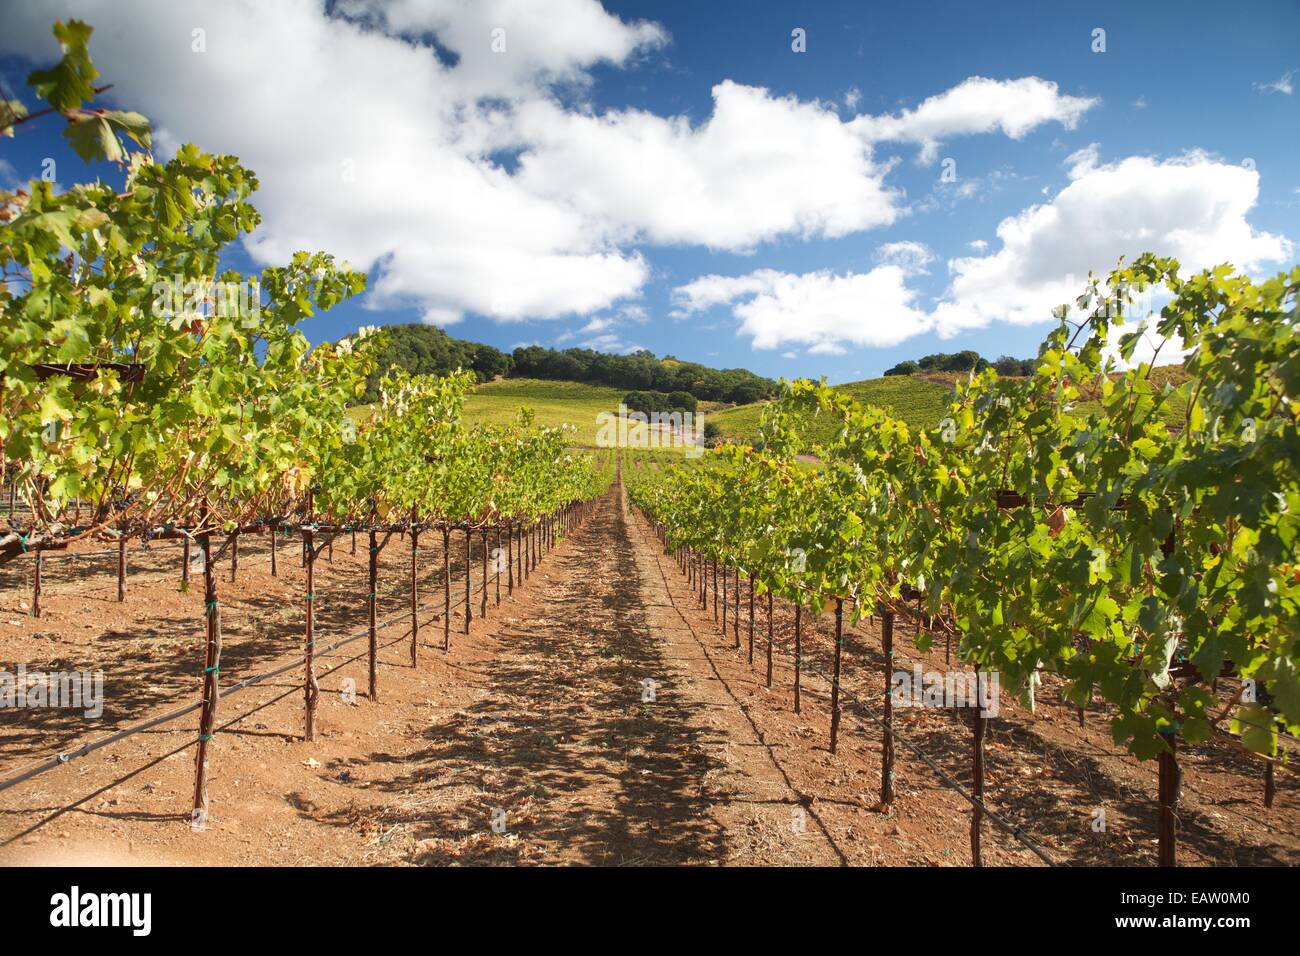 Splendide vedute dei vigneti nella famosa Napa Valley Wine Country nel nord della California, Stati Uniti d'America. Foto Stock